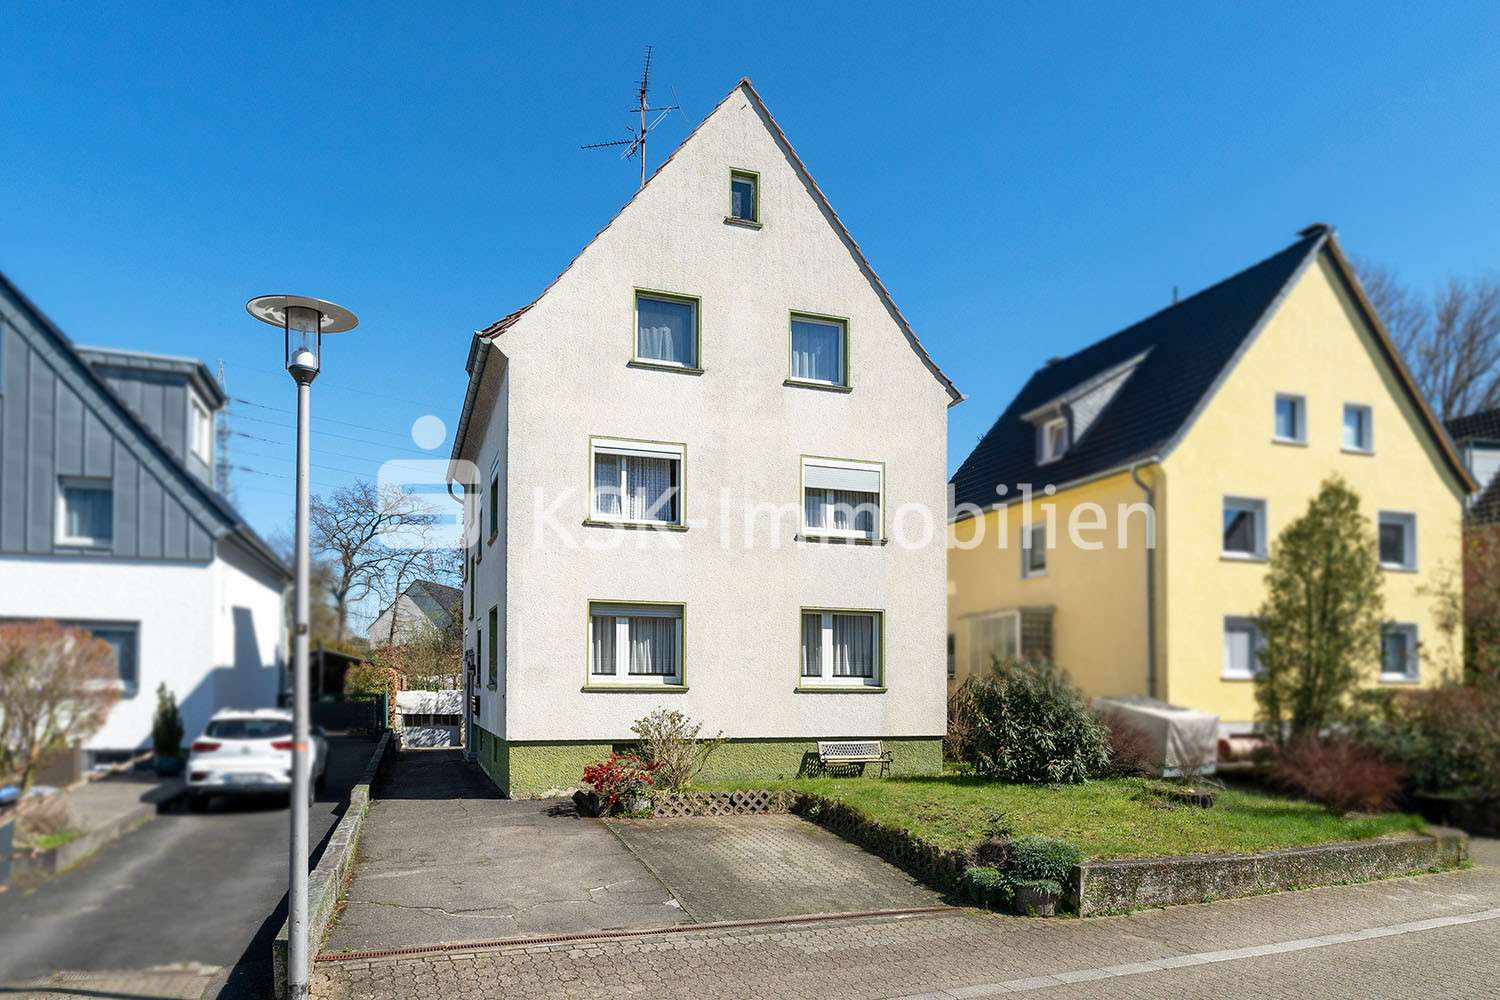 109060 Außenansicht - Mehrfamilienhaus in 51469 Bergisch Gladbach mit 211m² als Kapitalanlage günstig kaufen